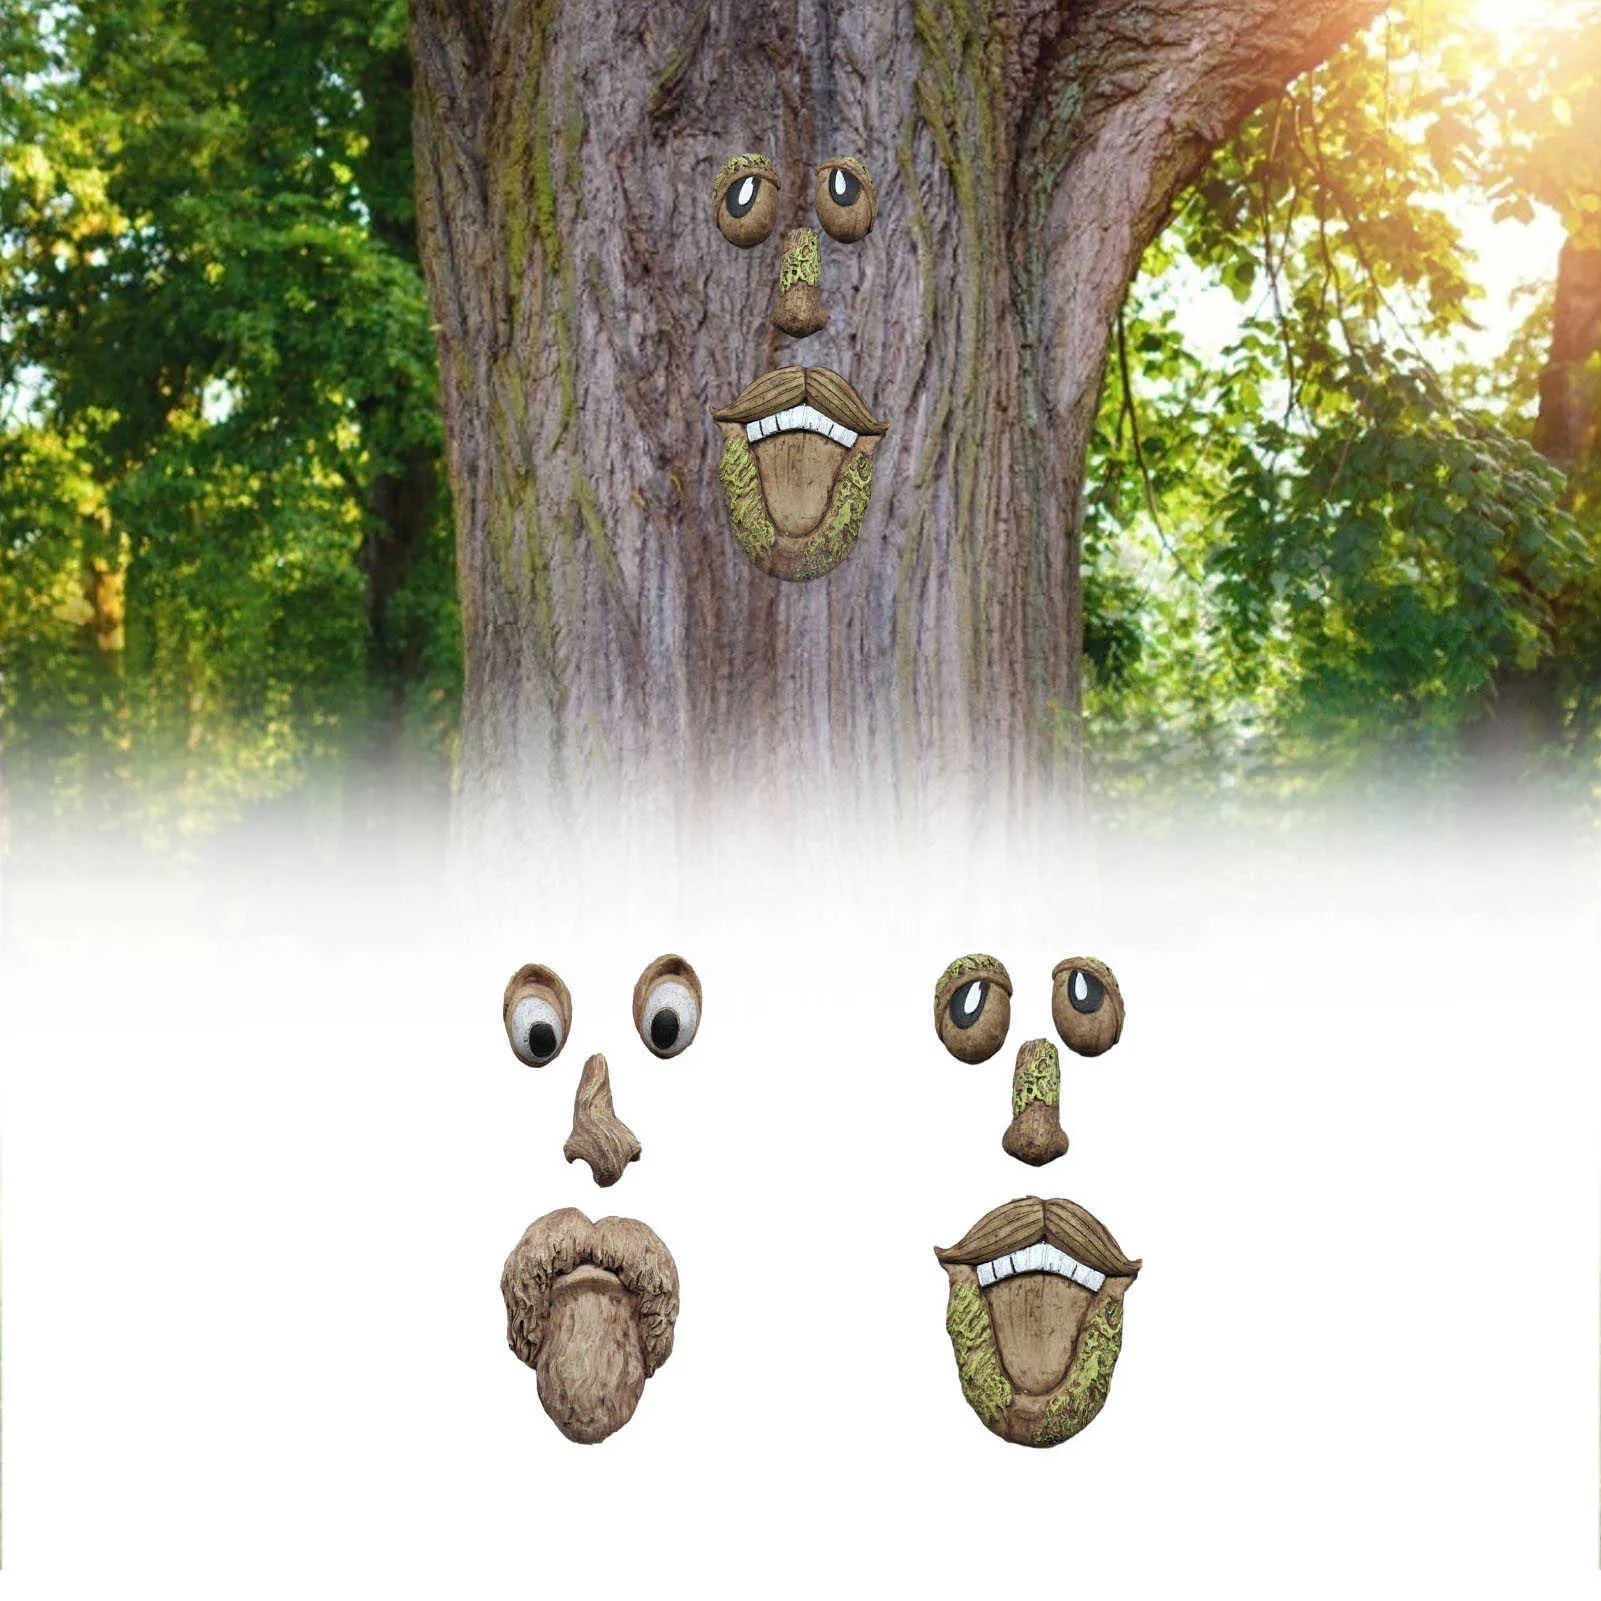 الرجل العجوز شجرة hugger حديقة peeker ساحة الفن في الهواء الطلق شجرة مضحك الرجل العجوز الوجه النحت غريب الأطوار شجرة الوجه حديقة الديكور Y0914